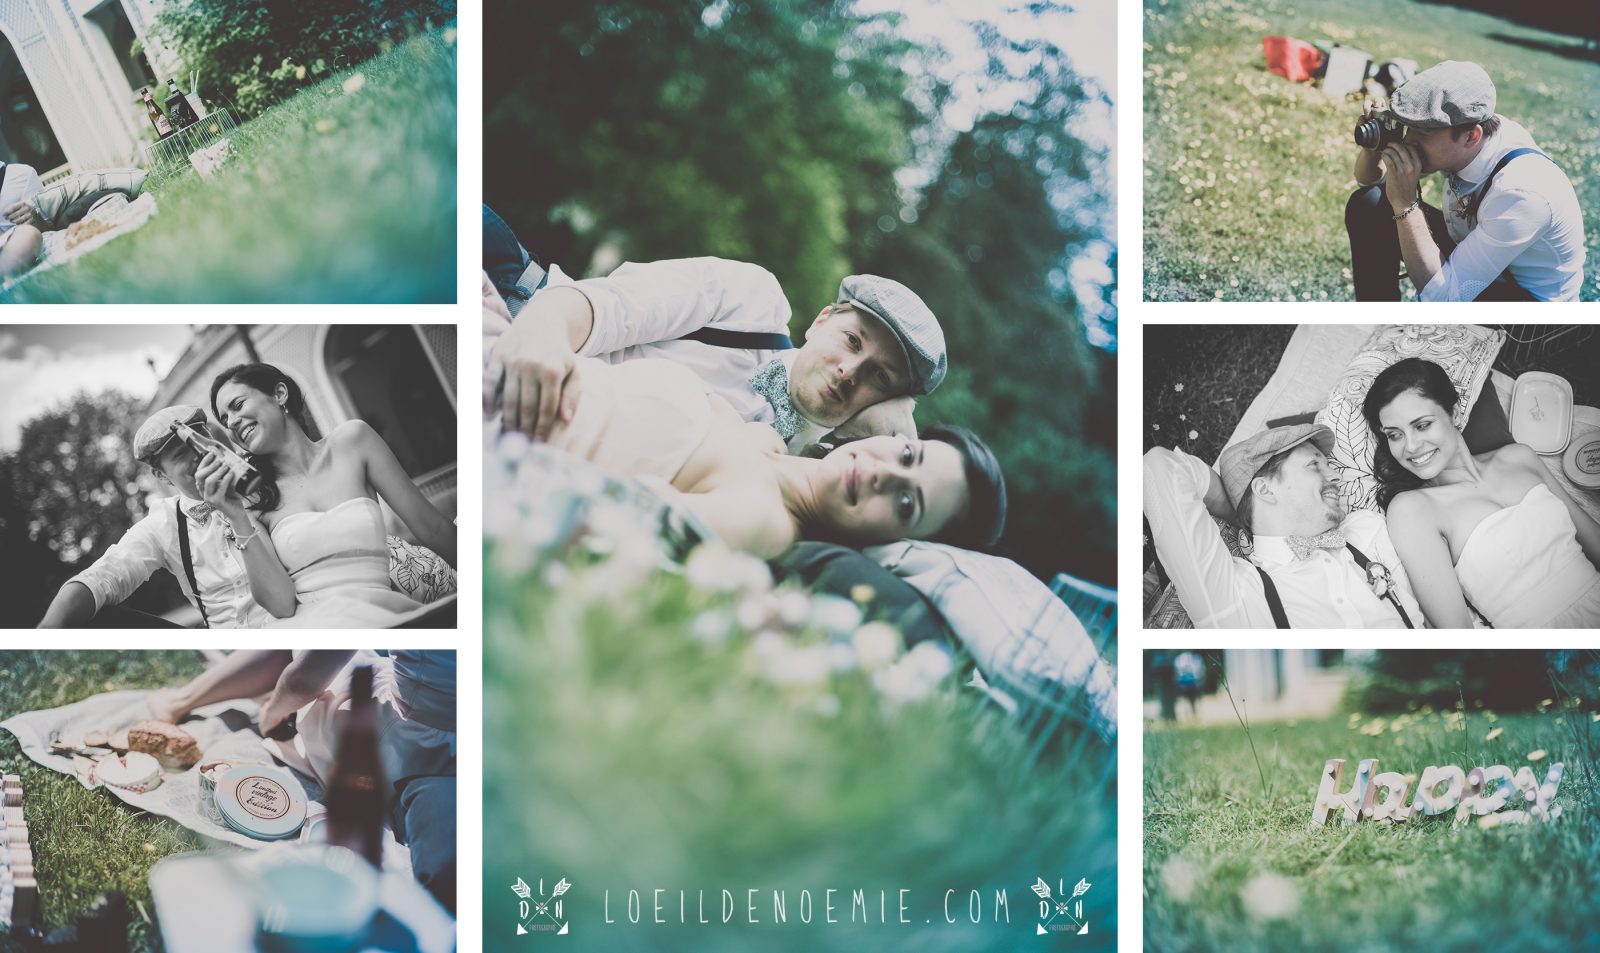 séance photo engagement à Vichy, magnifiques photos de couple, L'oeil de Noémie photographe mariage vichy